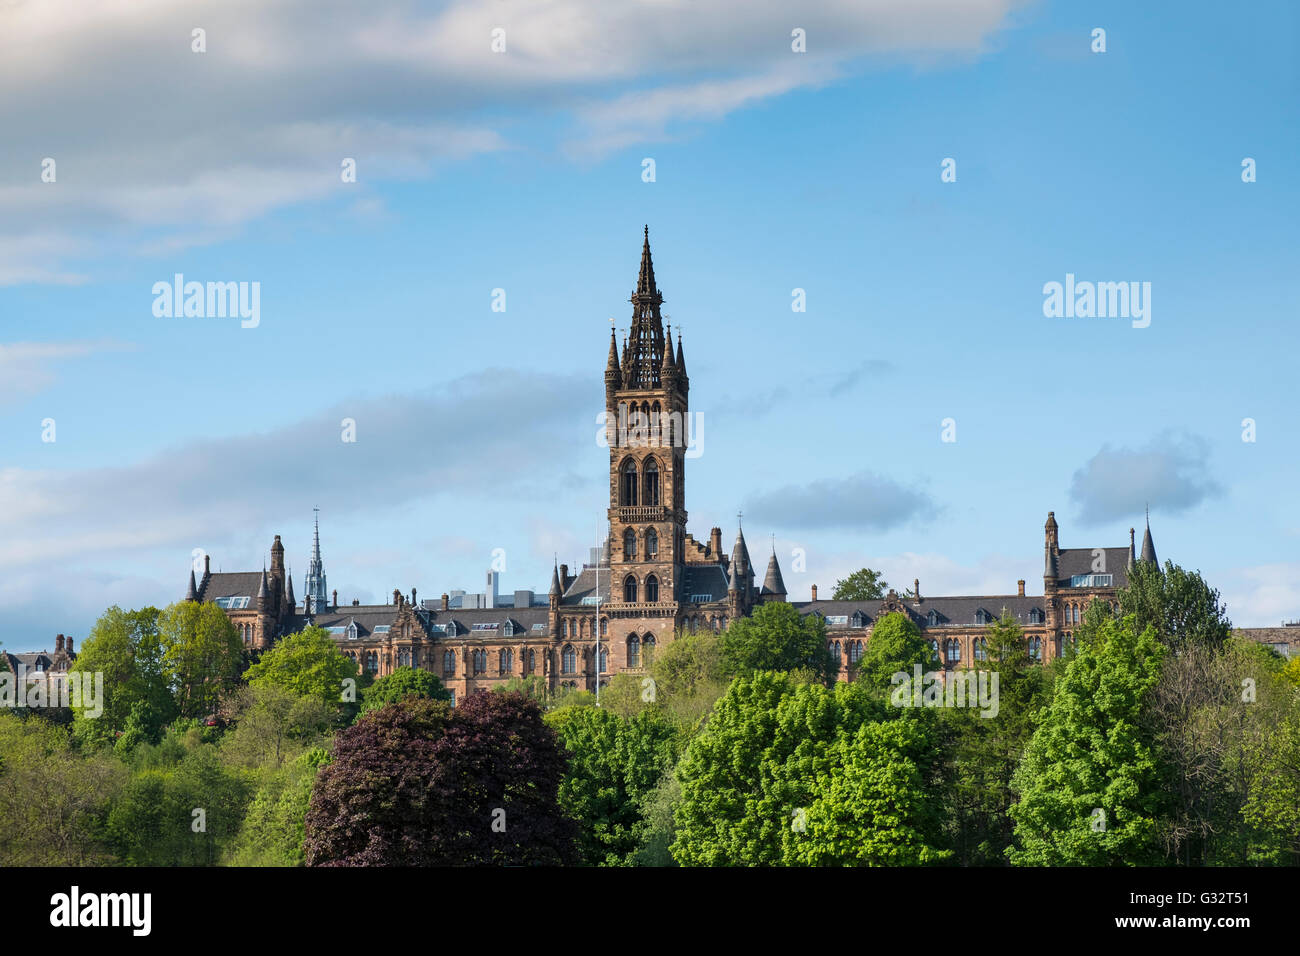 Vue de l'architecture gothique de l'Université de Glasgow en Ecosse, Royaume-Uni Banque D'Images